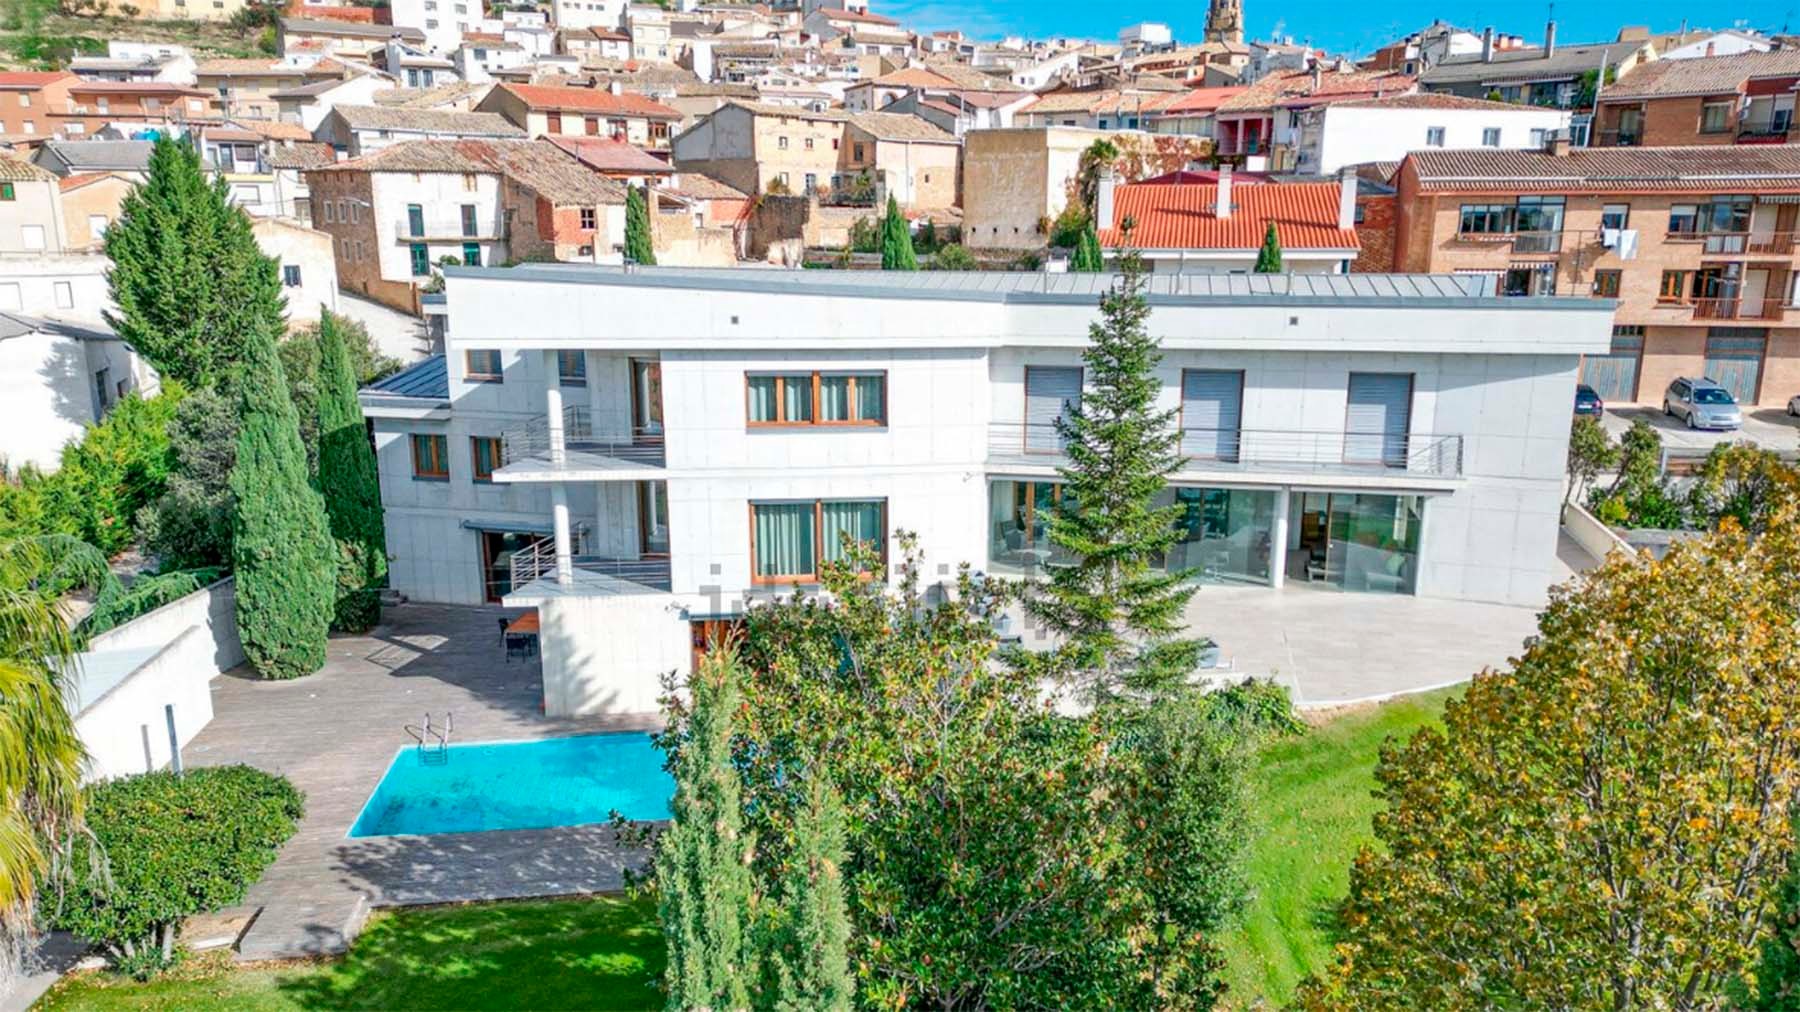 La casa de lujo que se vende en un pueblo de Navarra y es digna de las mansiones de Hollywood